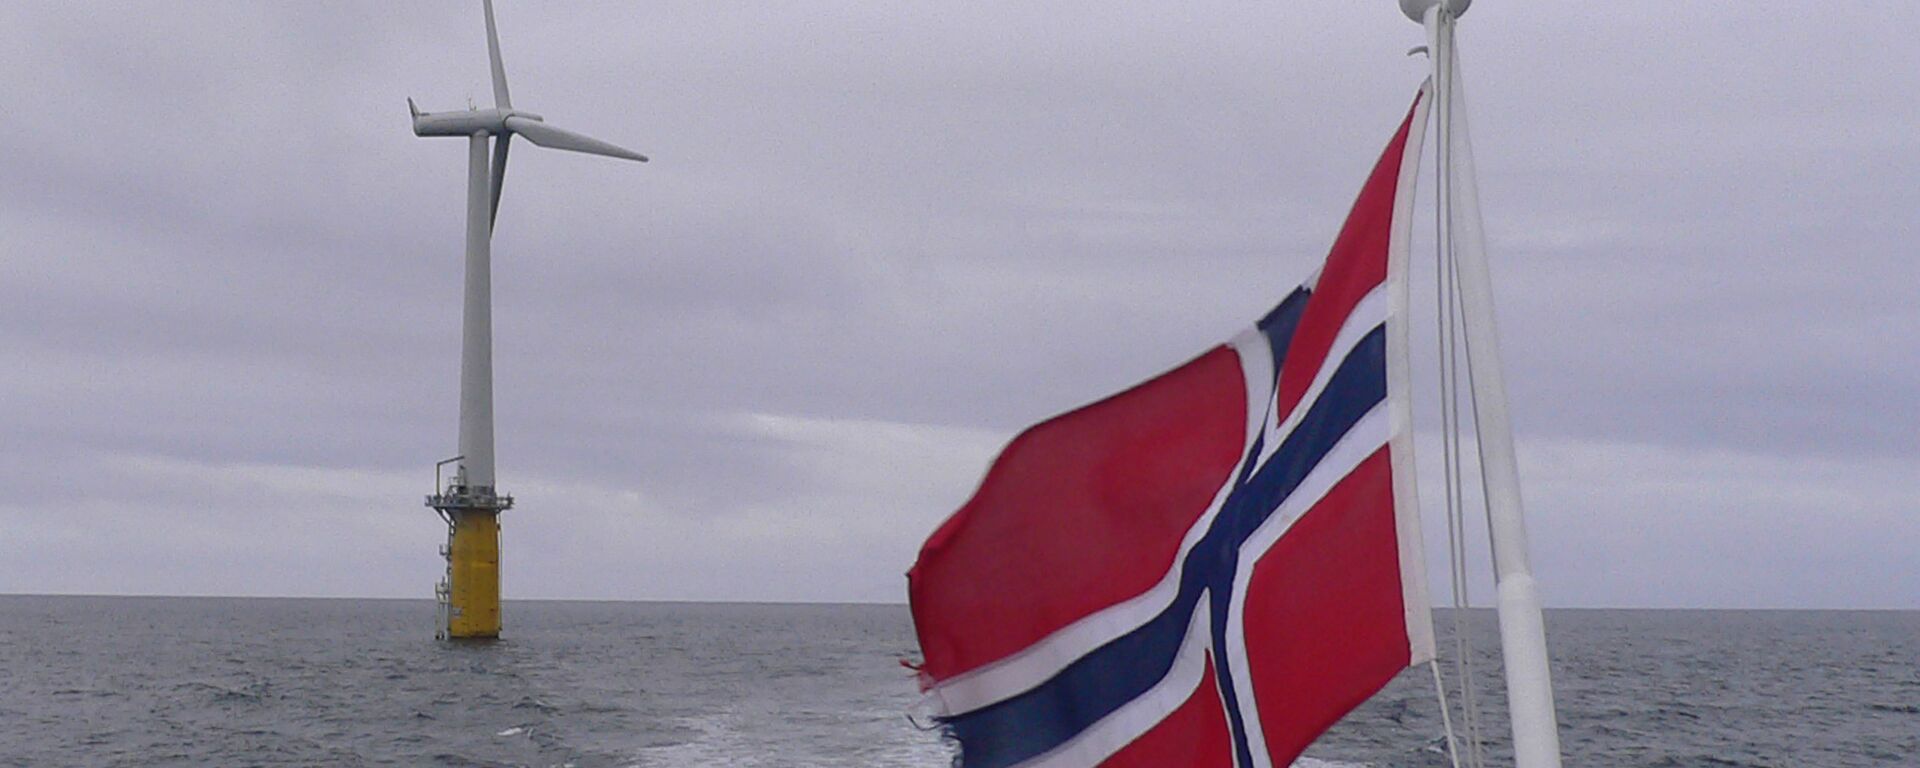 Zastava Norveške na brodu koji prolazi pored vetrenjače  - Sputnik Srbija, 1920, 22.05.2022